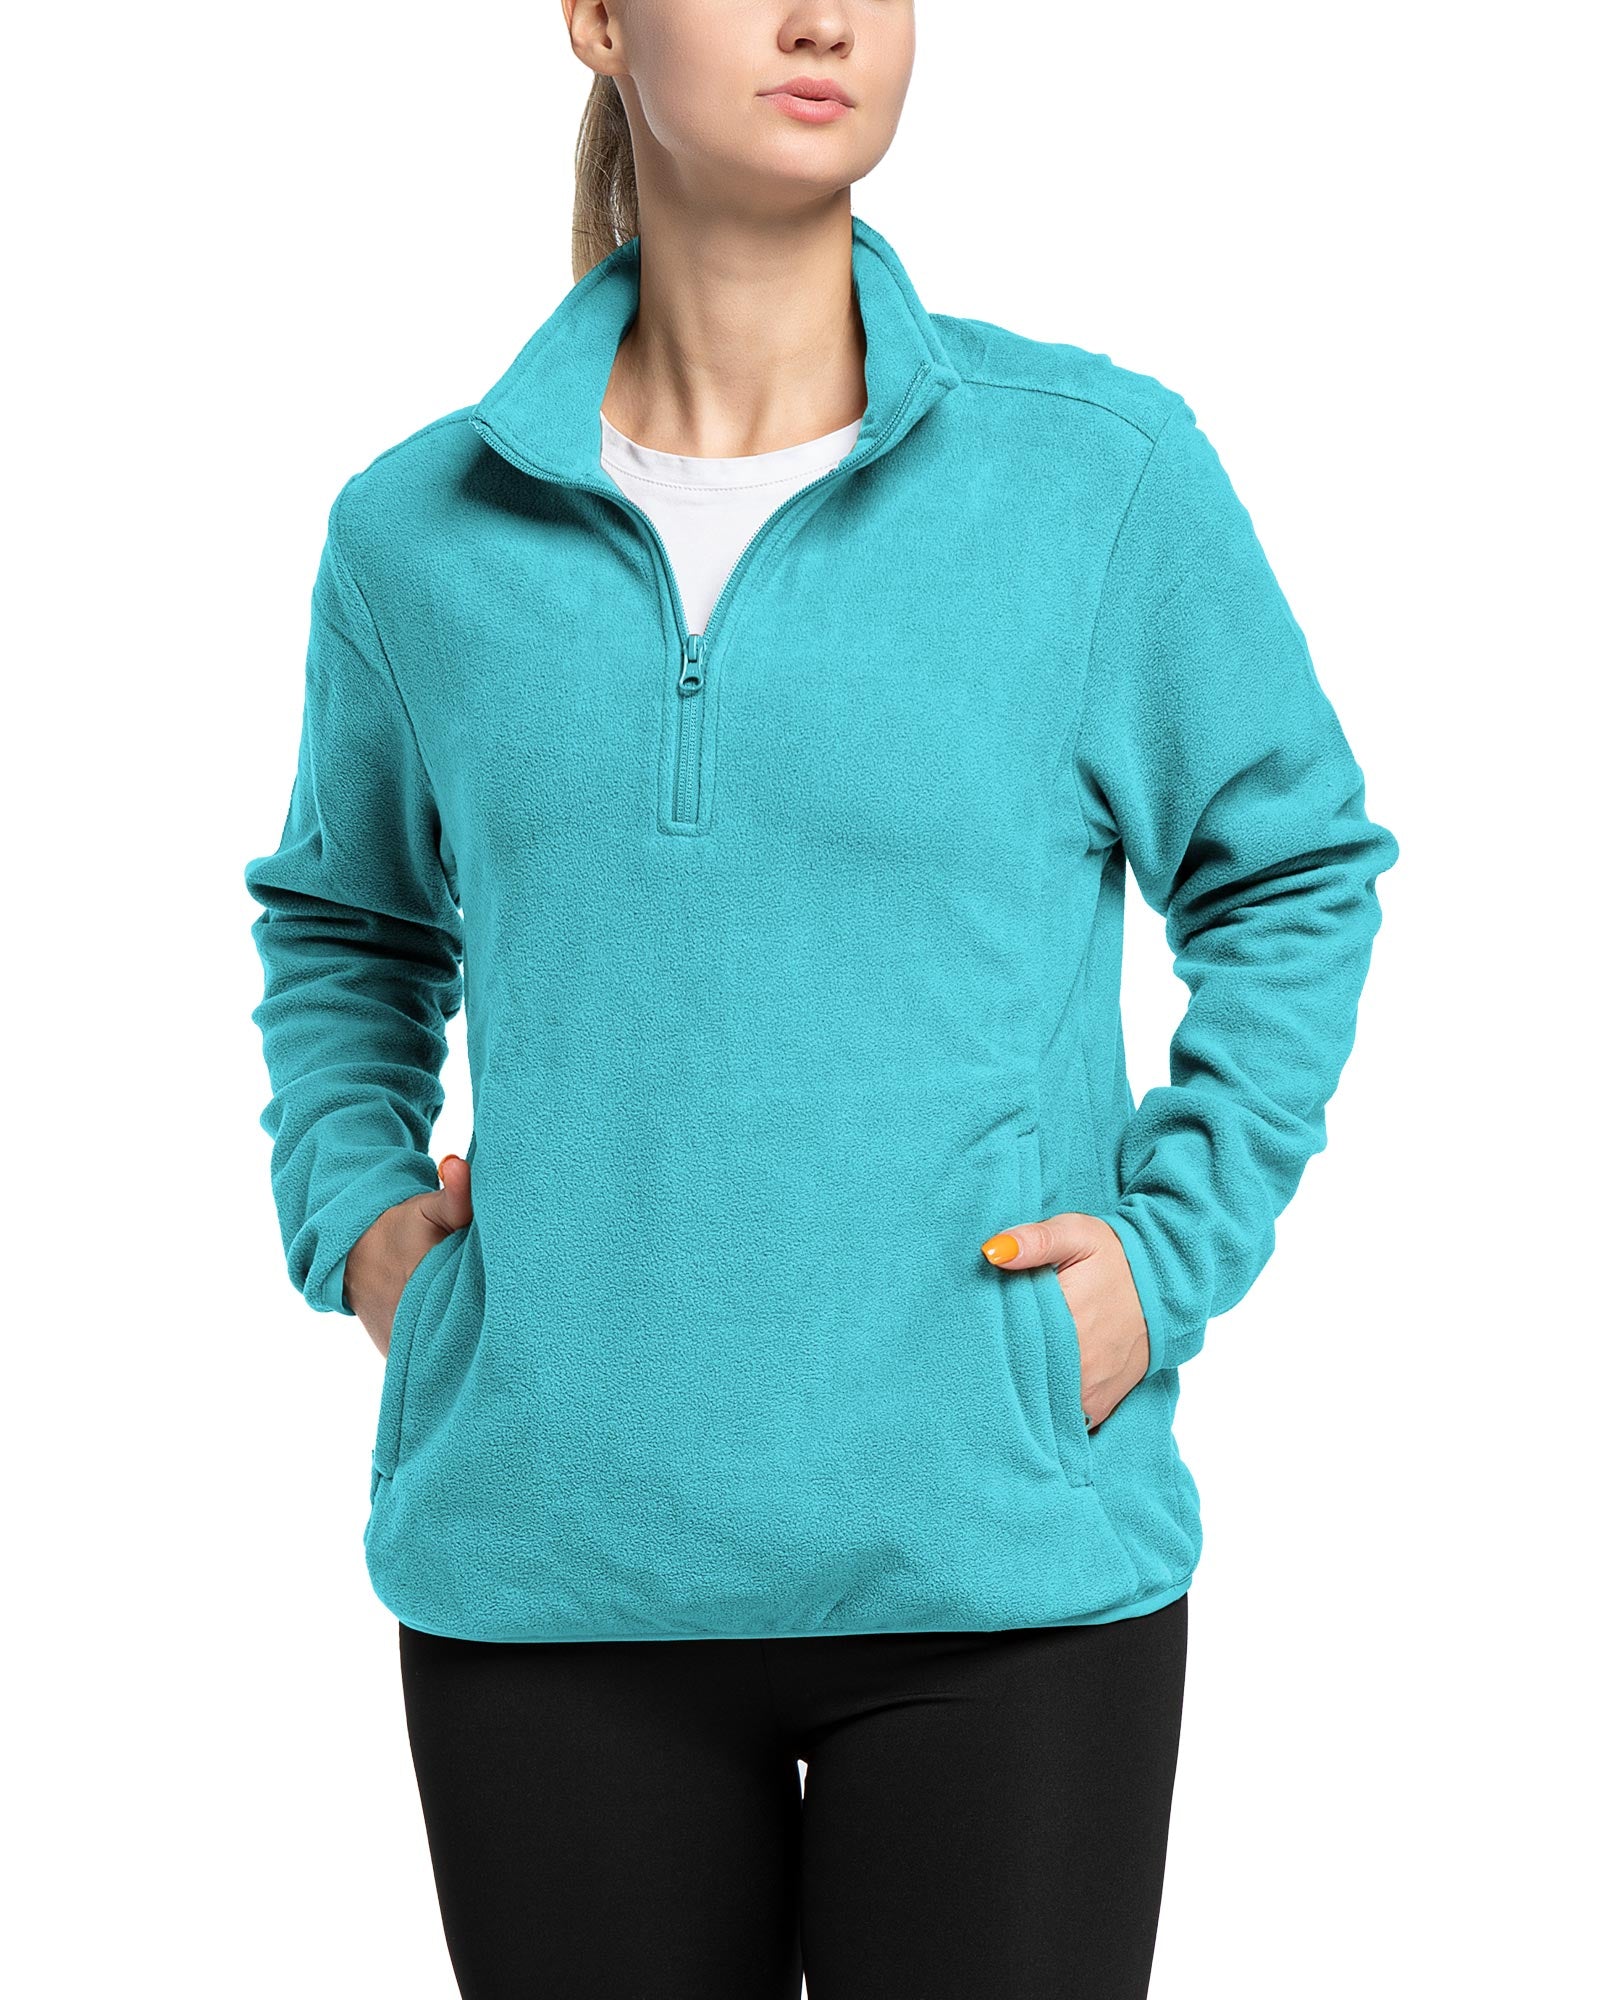 Women's Quarter-Zip Fleece Pullover